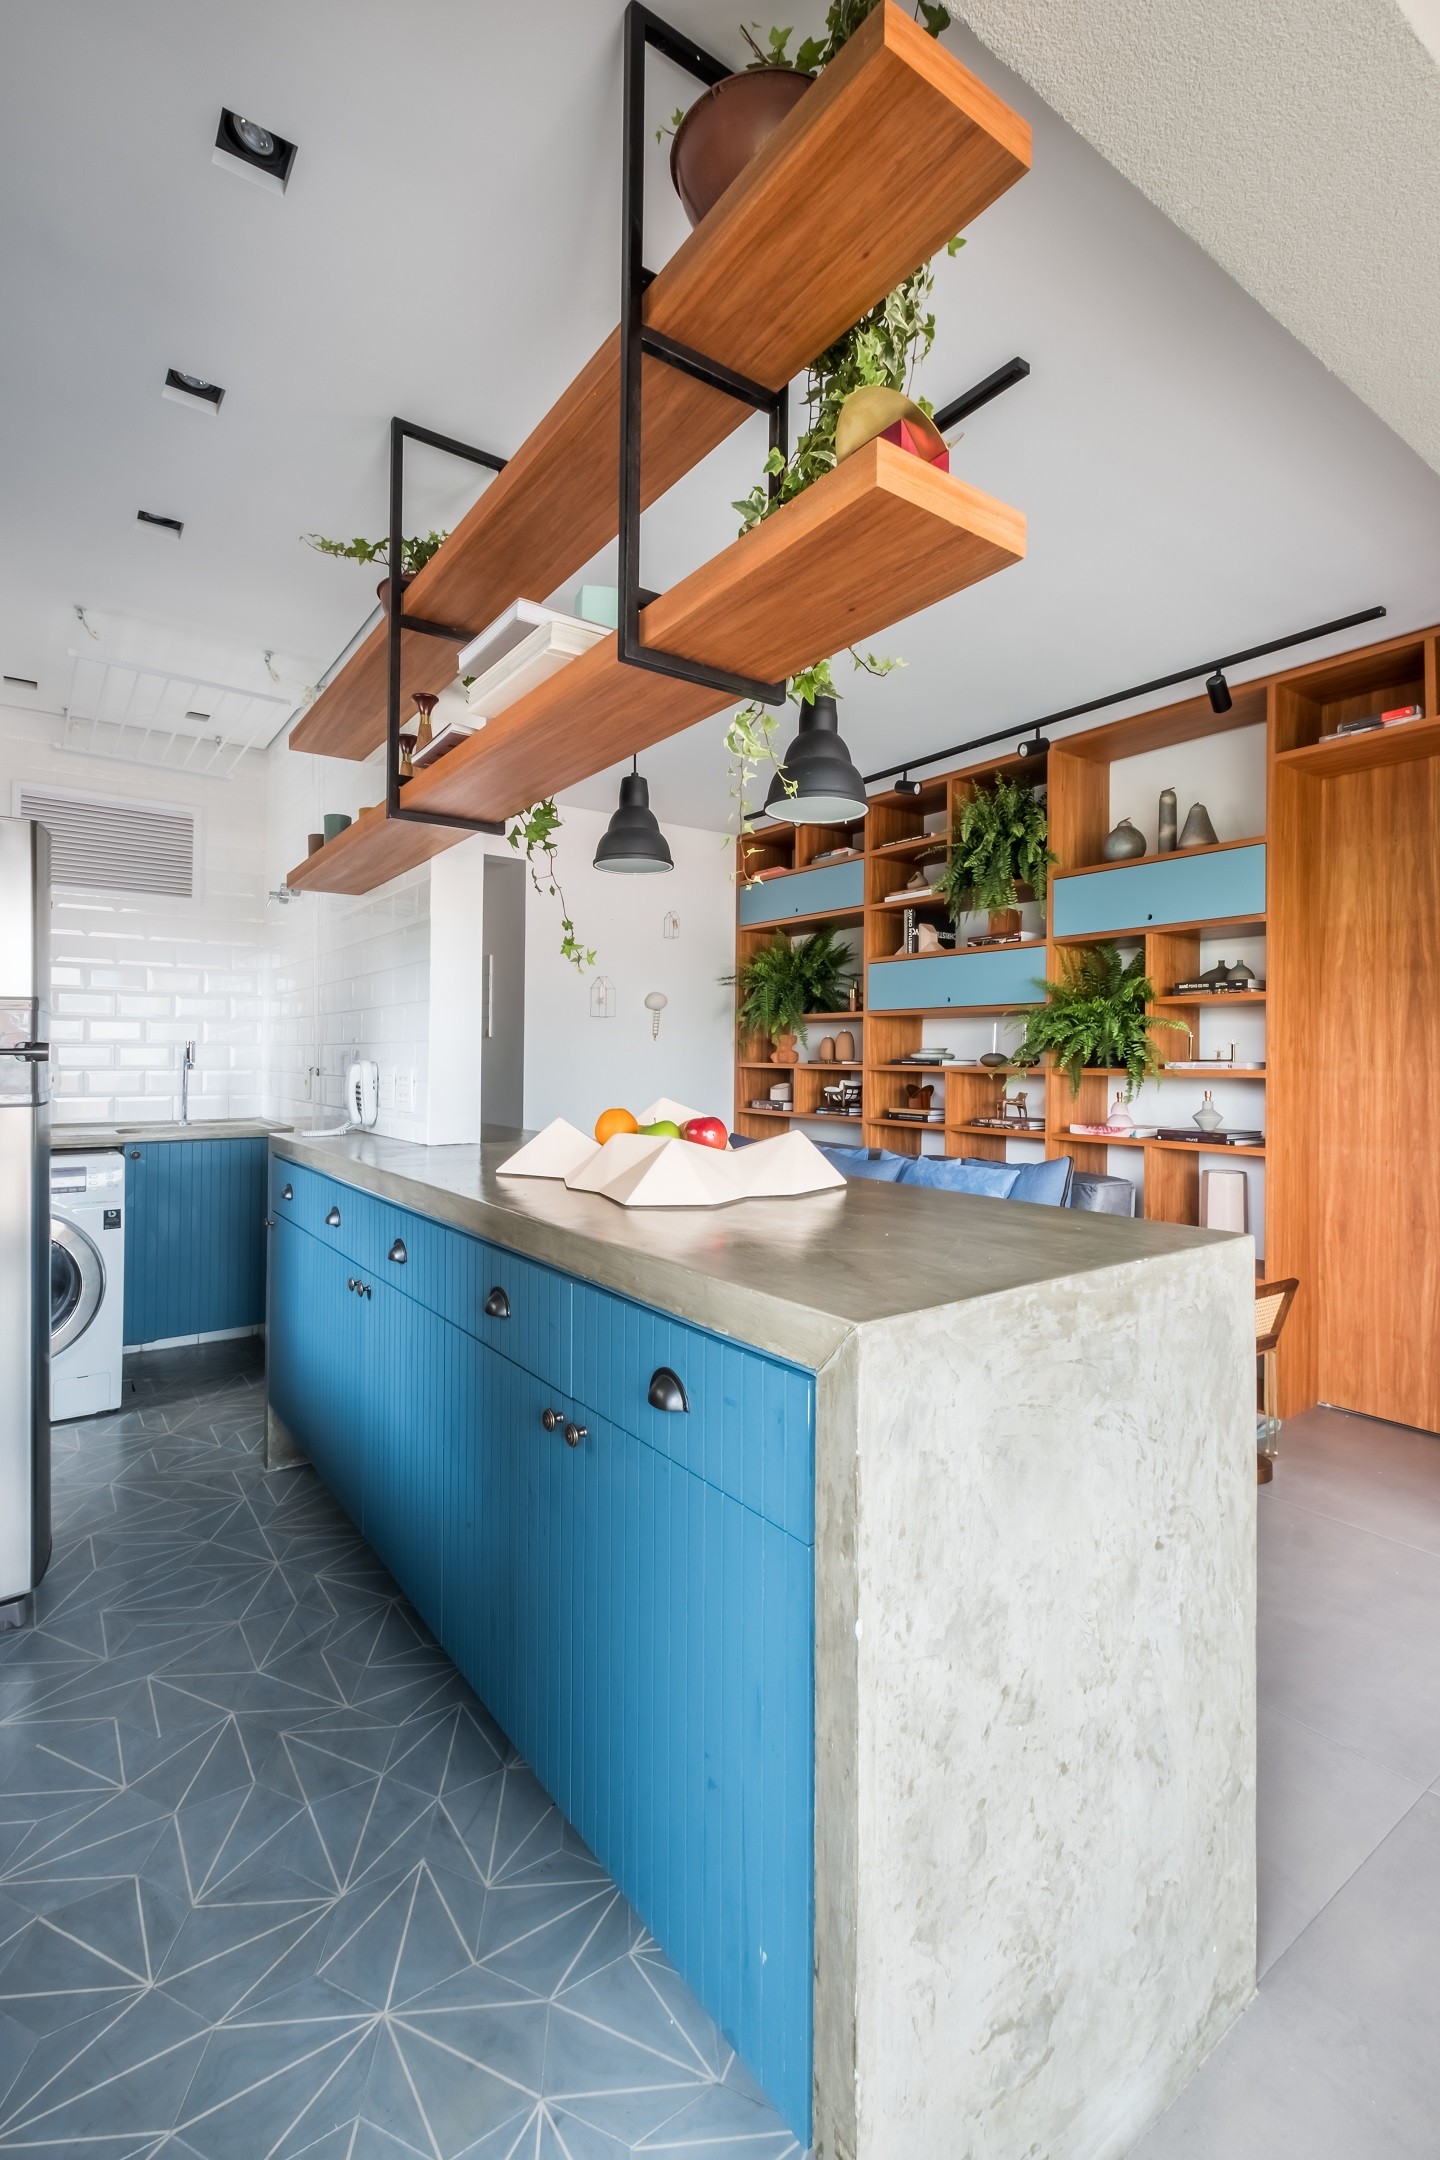 Décor do dia: cozinha integrada azul com piso geométrico (Foto: Nathalie Artaxo)